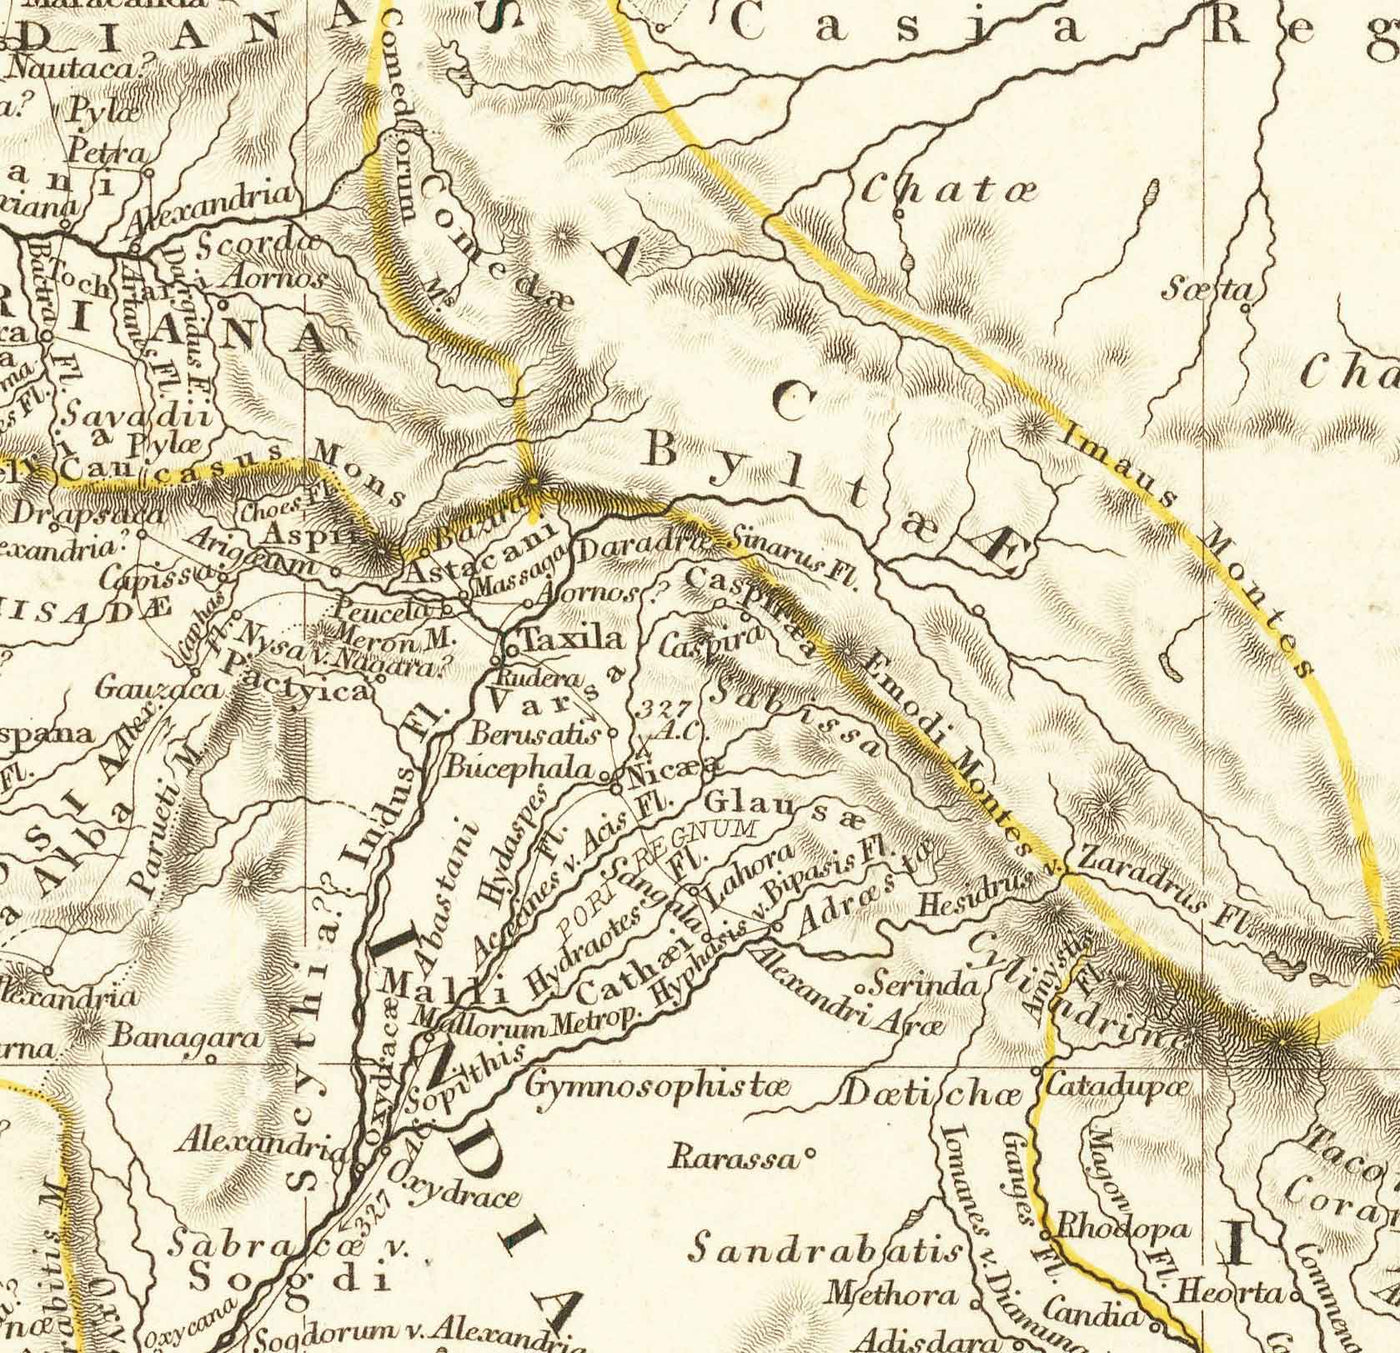 Mapa antiguo del mundo de Arrowsmith, 1822 - Europa medieval, Oriente Medio, África - Orbis Veteribus Notus